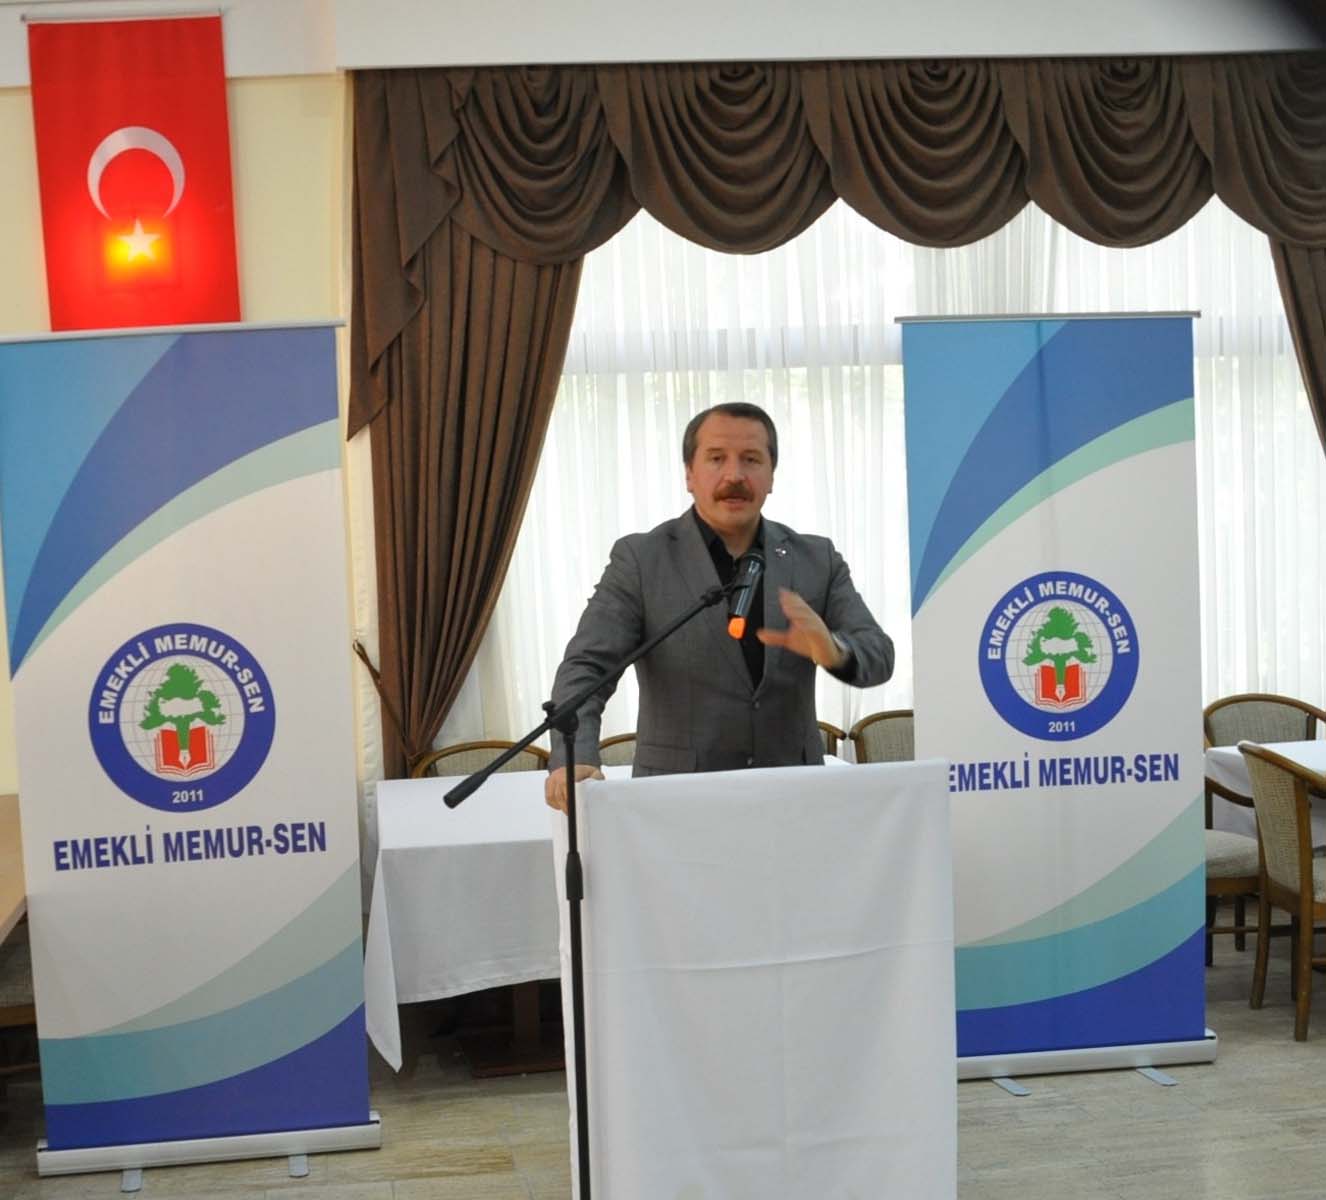 Ali Yalçın, Emekli Memur-Sen İstanbul İl Divan toplantısına katıldı